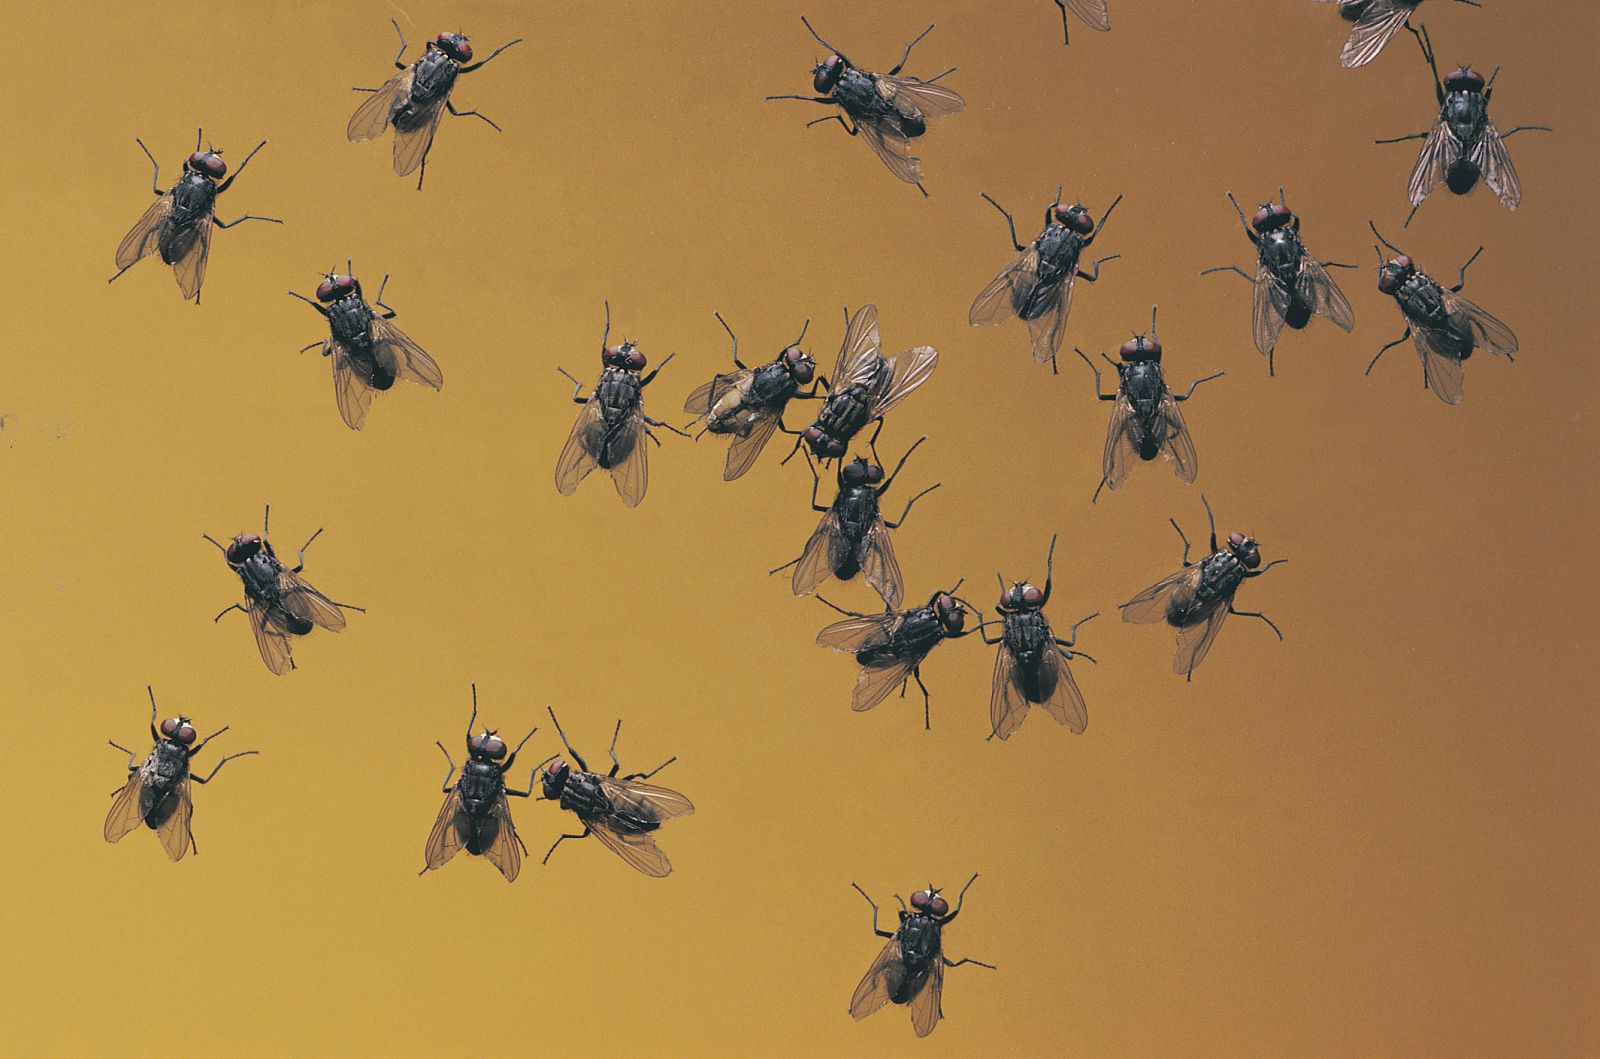 La Asociación Española de Entomología defiende la cría de moscas para controlar el uso de insecticidas en invernaderos